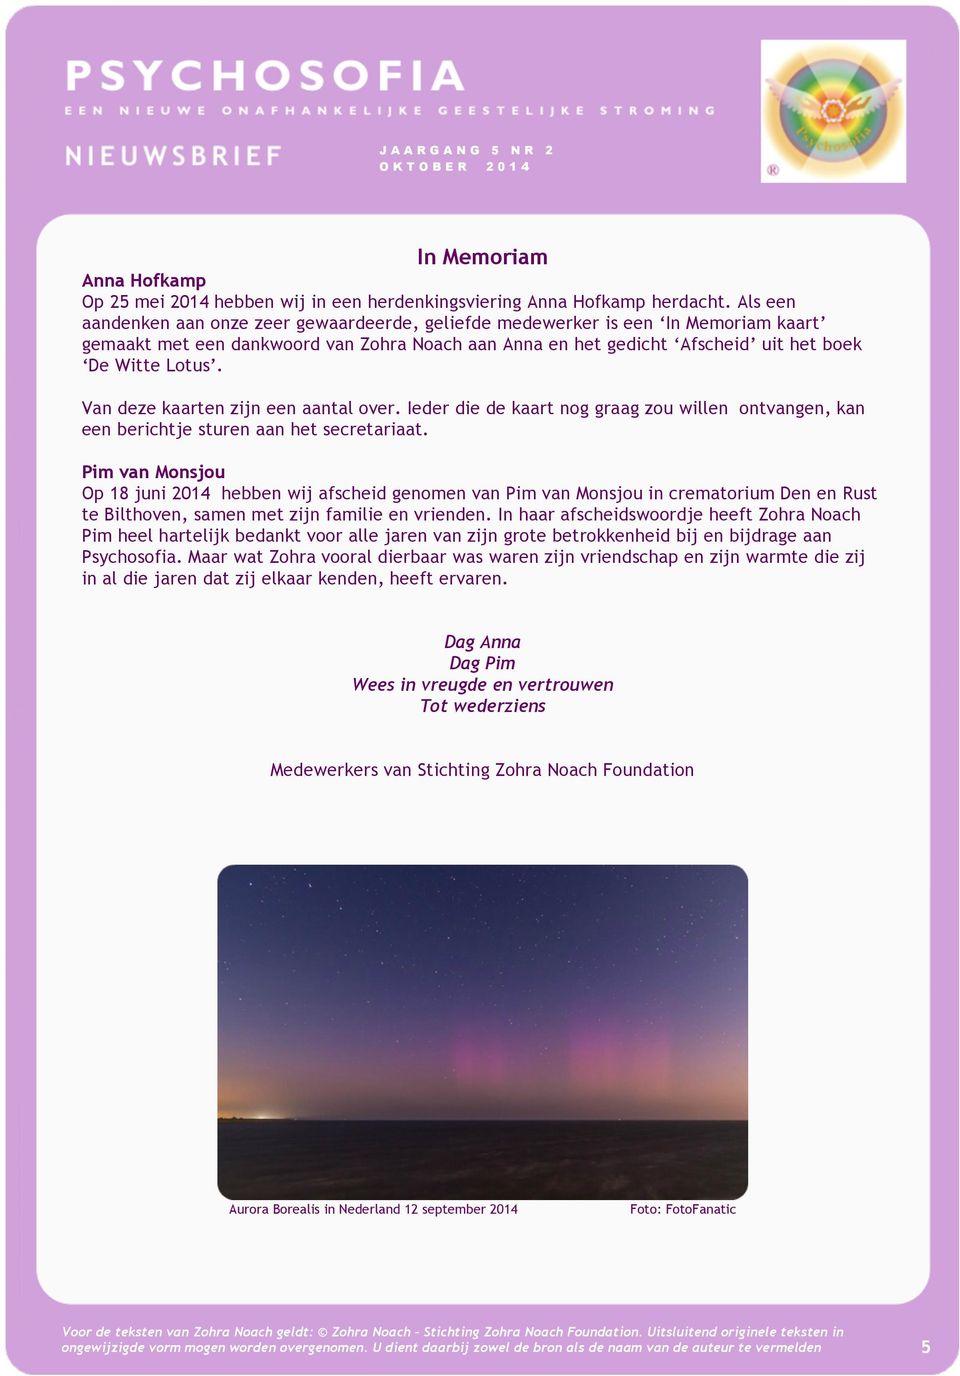 berichtje sturen aan het secretariaat Pim van Monsjou Op 18 juni 2014 hebben wij afscheid genomen van Pim van Monsjou in crematorium Den en Rust te Bilthoven, samen met zijn familie en vrienden In